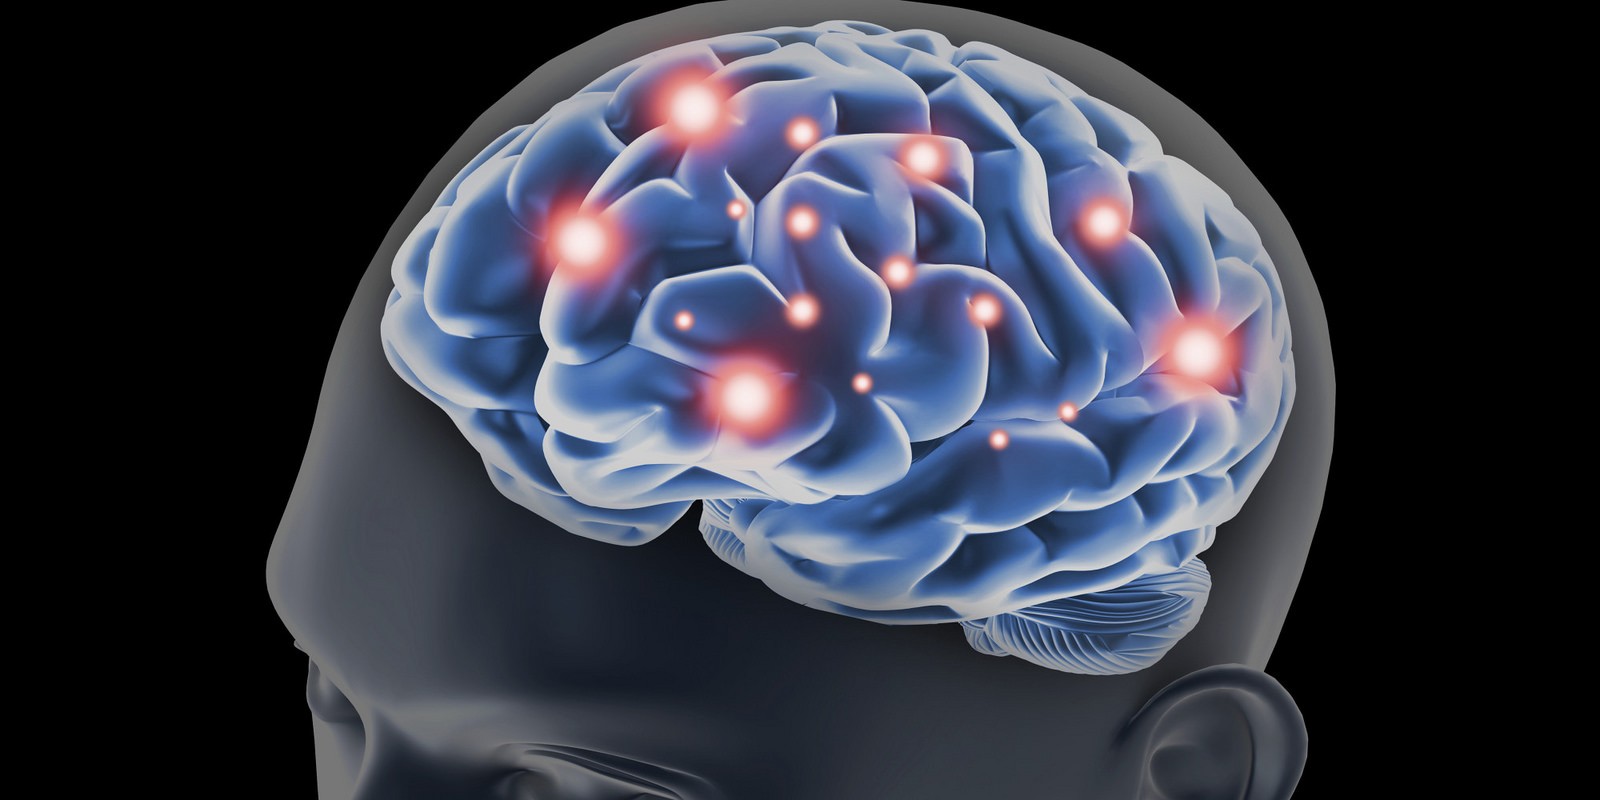 التحفيز الضوئي والصوتي يحسن وظائف الدماغ